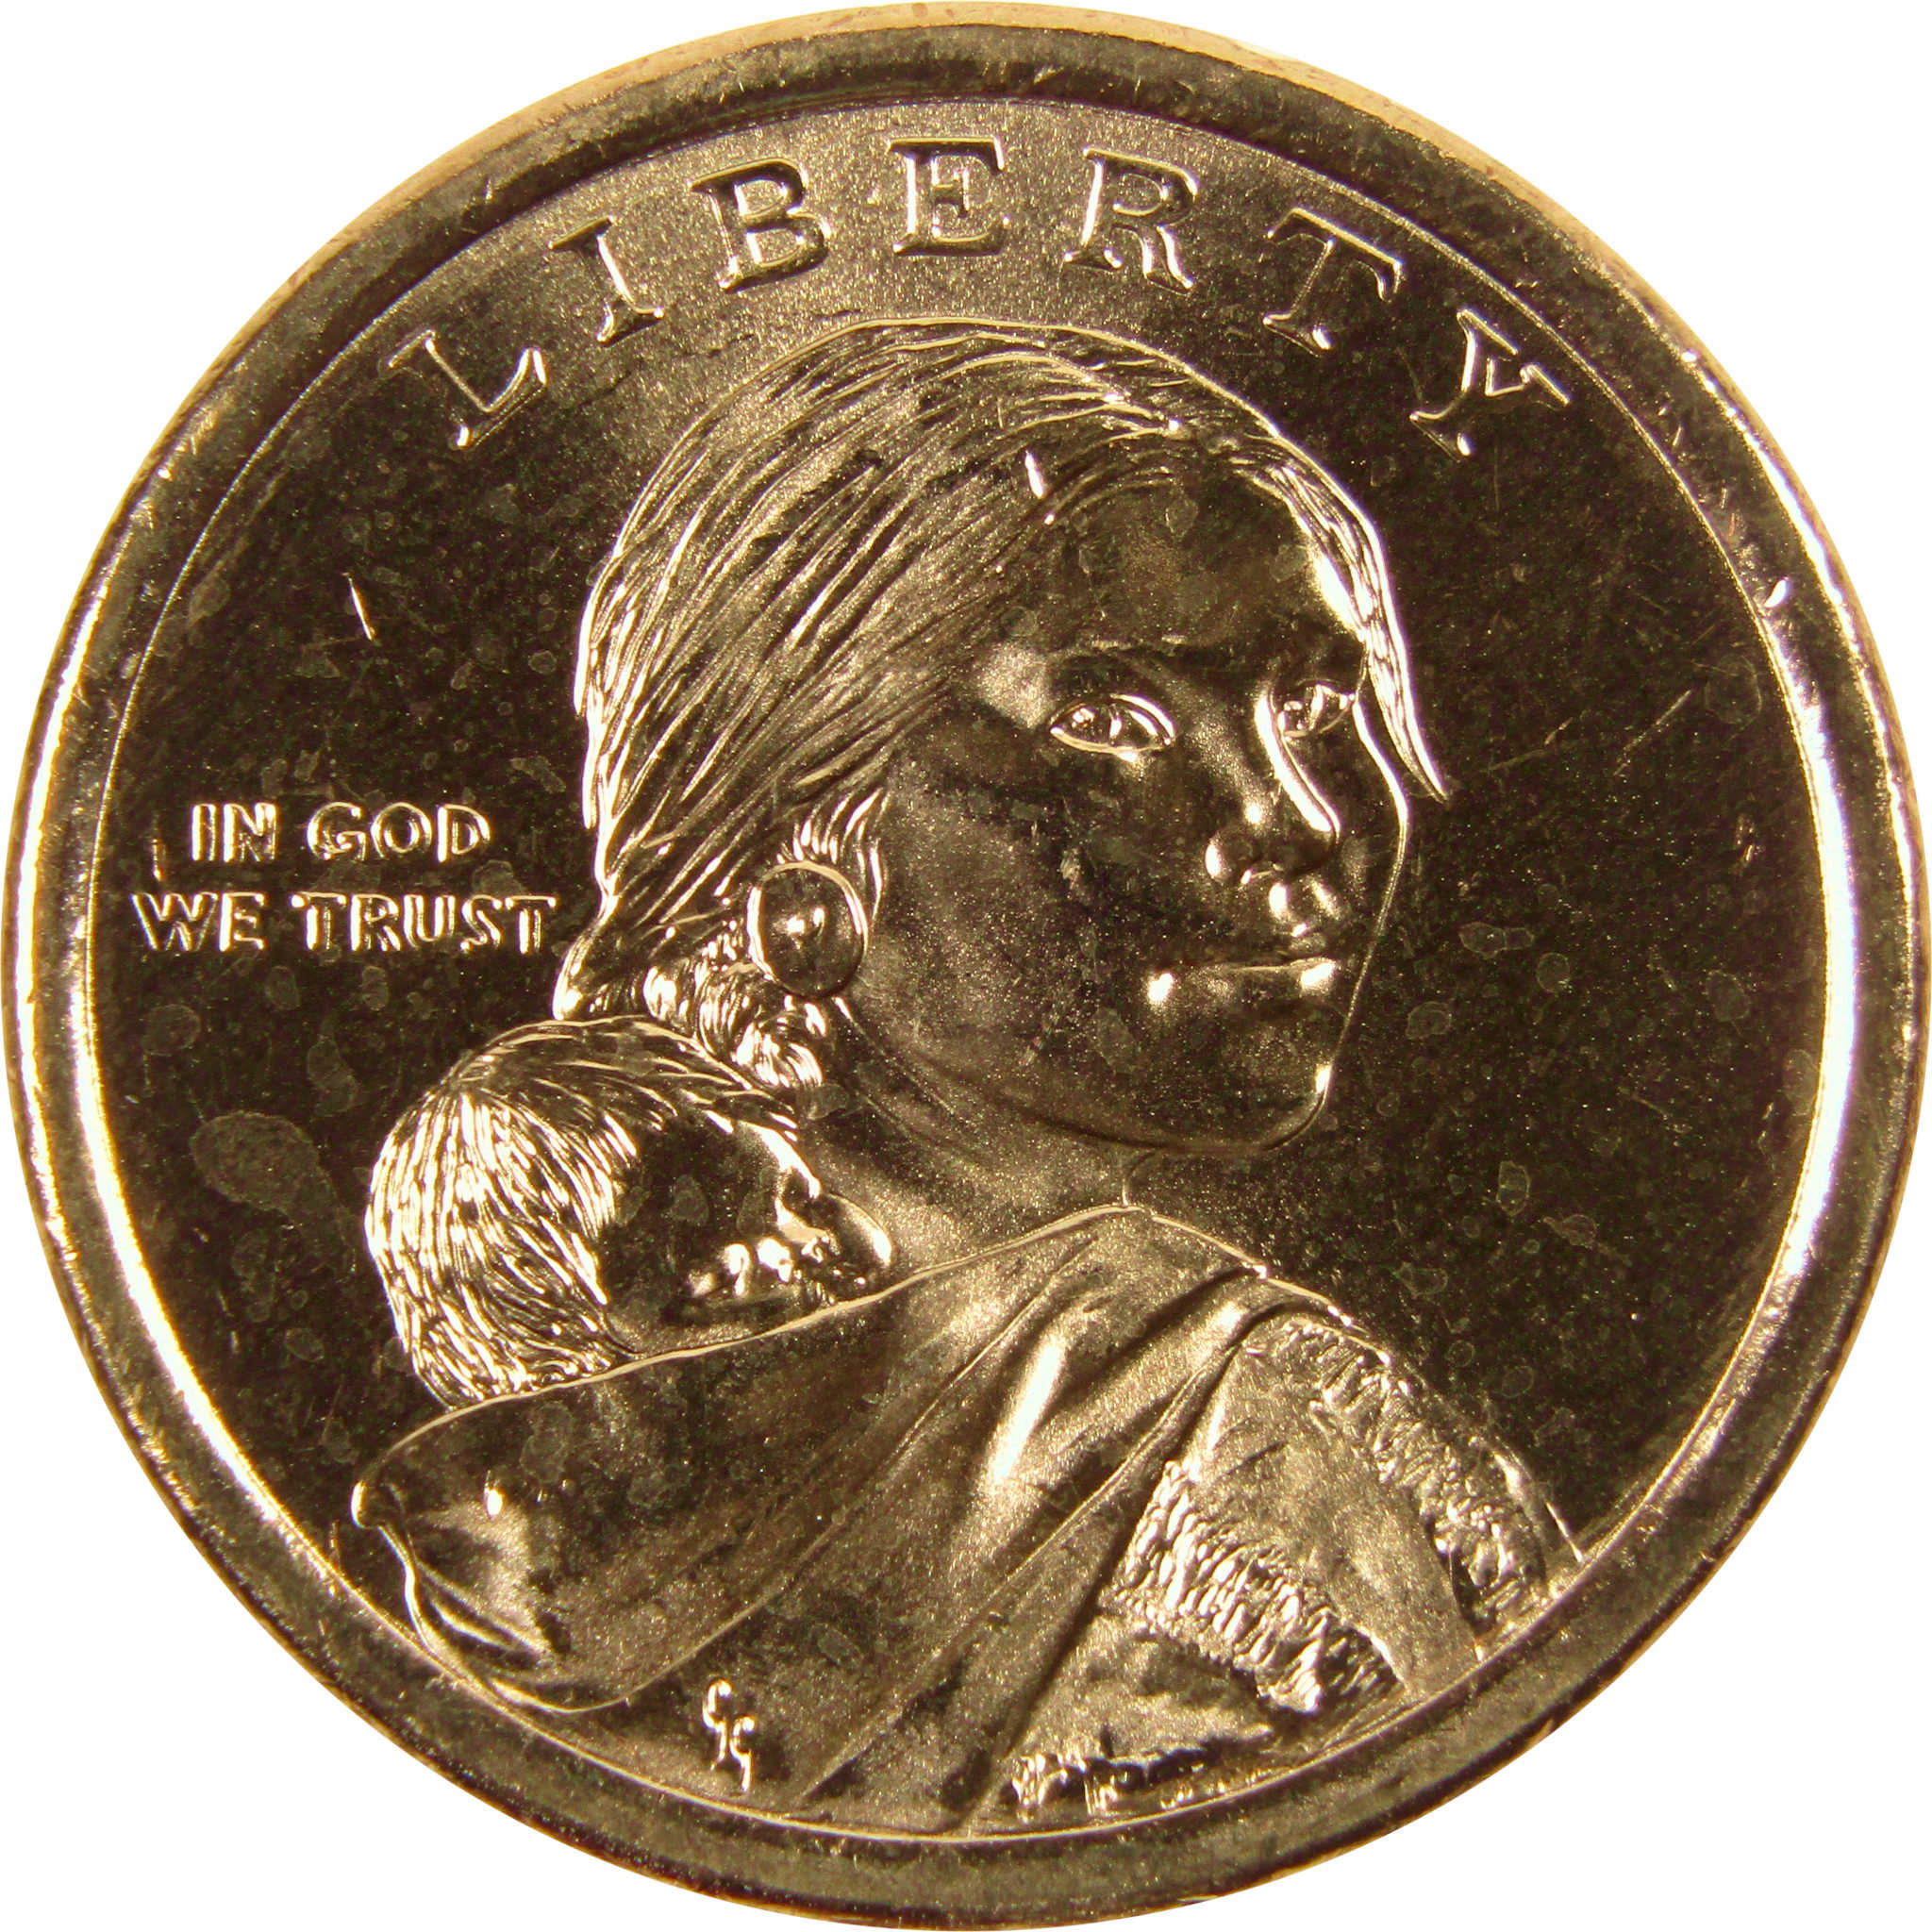 2011 D Wampanoag Treaty Native American Dollar BU Uncirculated $1 Coin